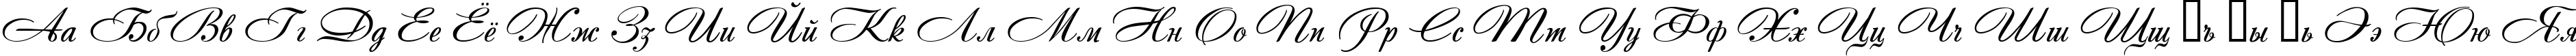 Пример написания русского алфавита шрифтом Andantino script